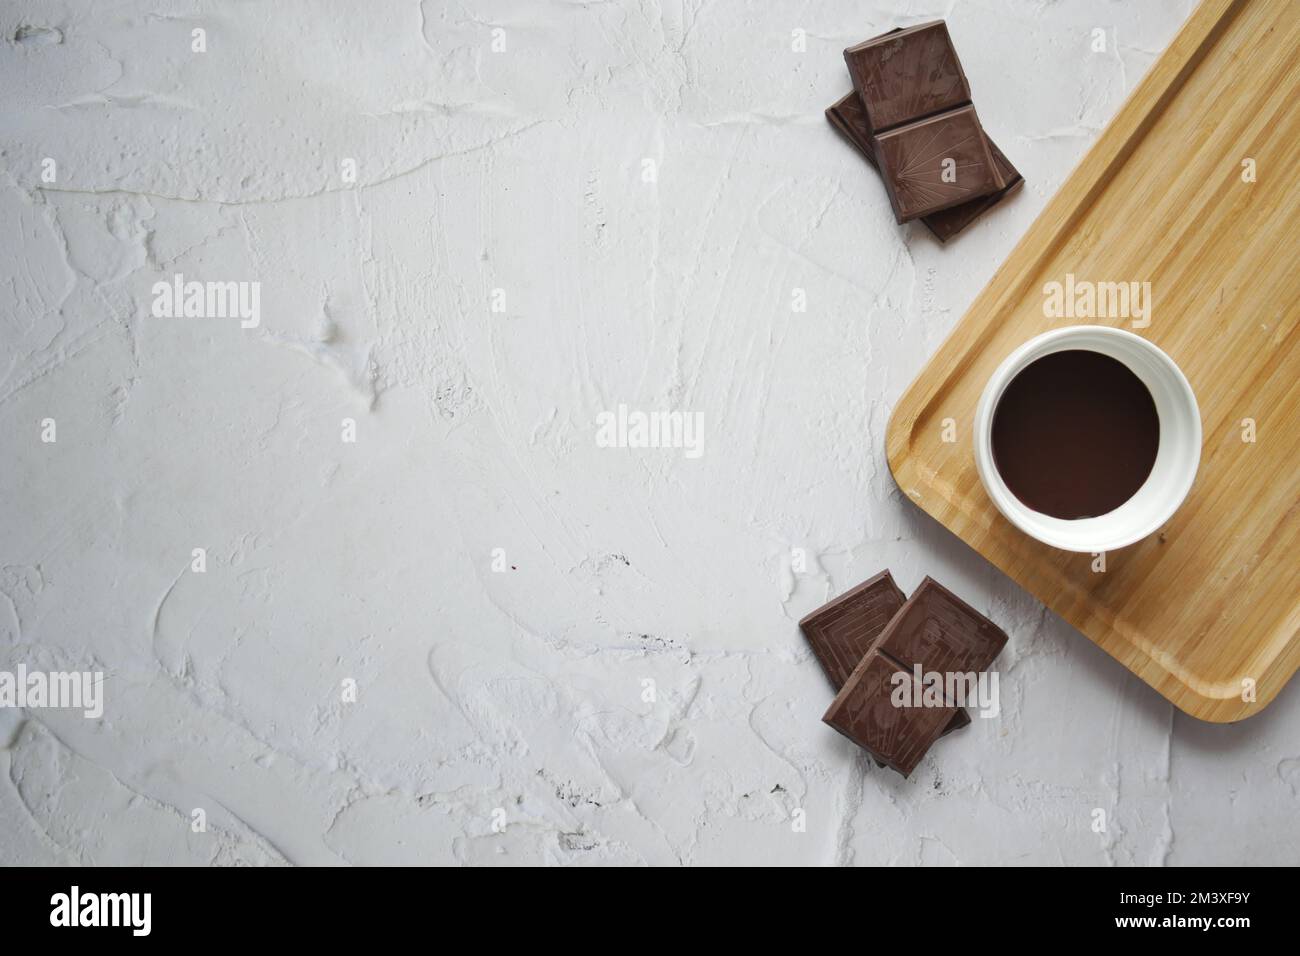 vue de dessus du liquide de chocolat noir et des bonbons sur fond blanc Banque D'Images